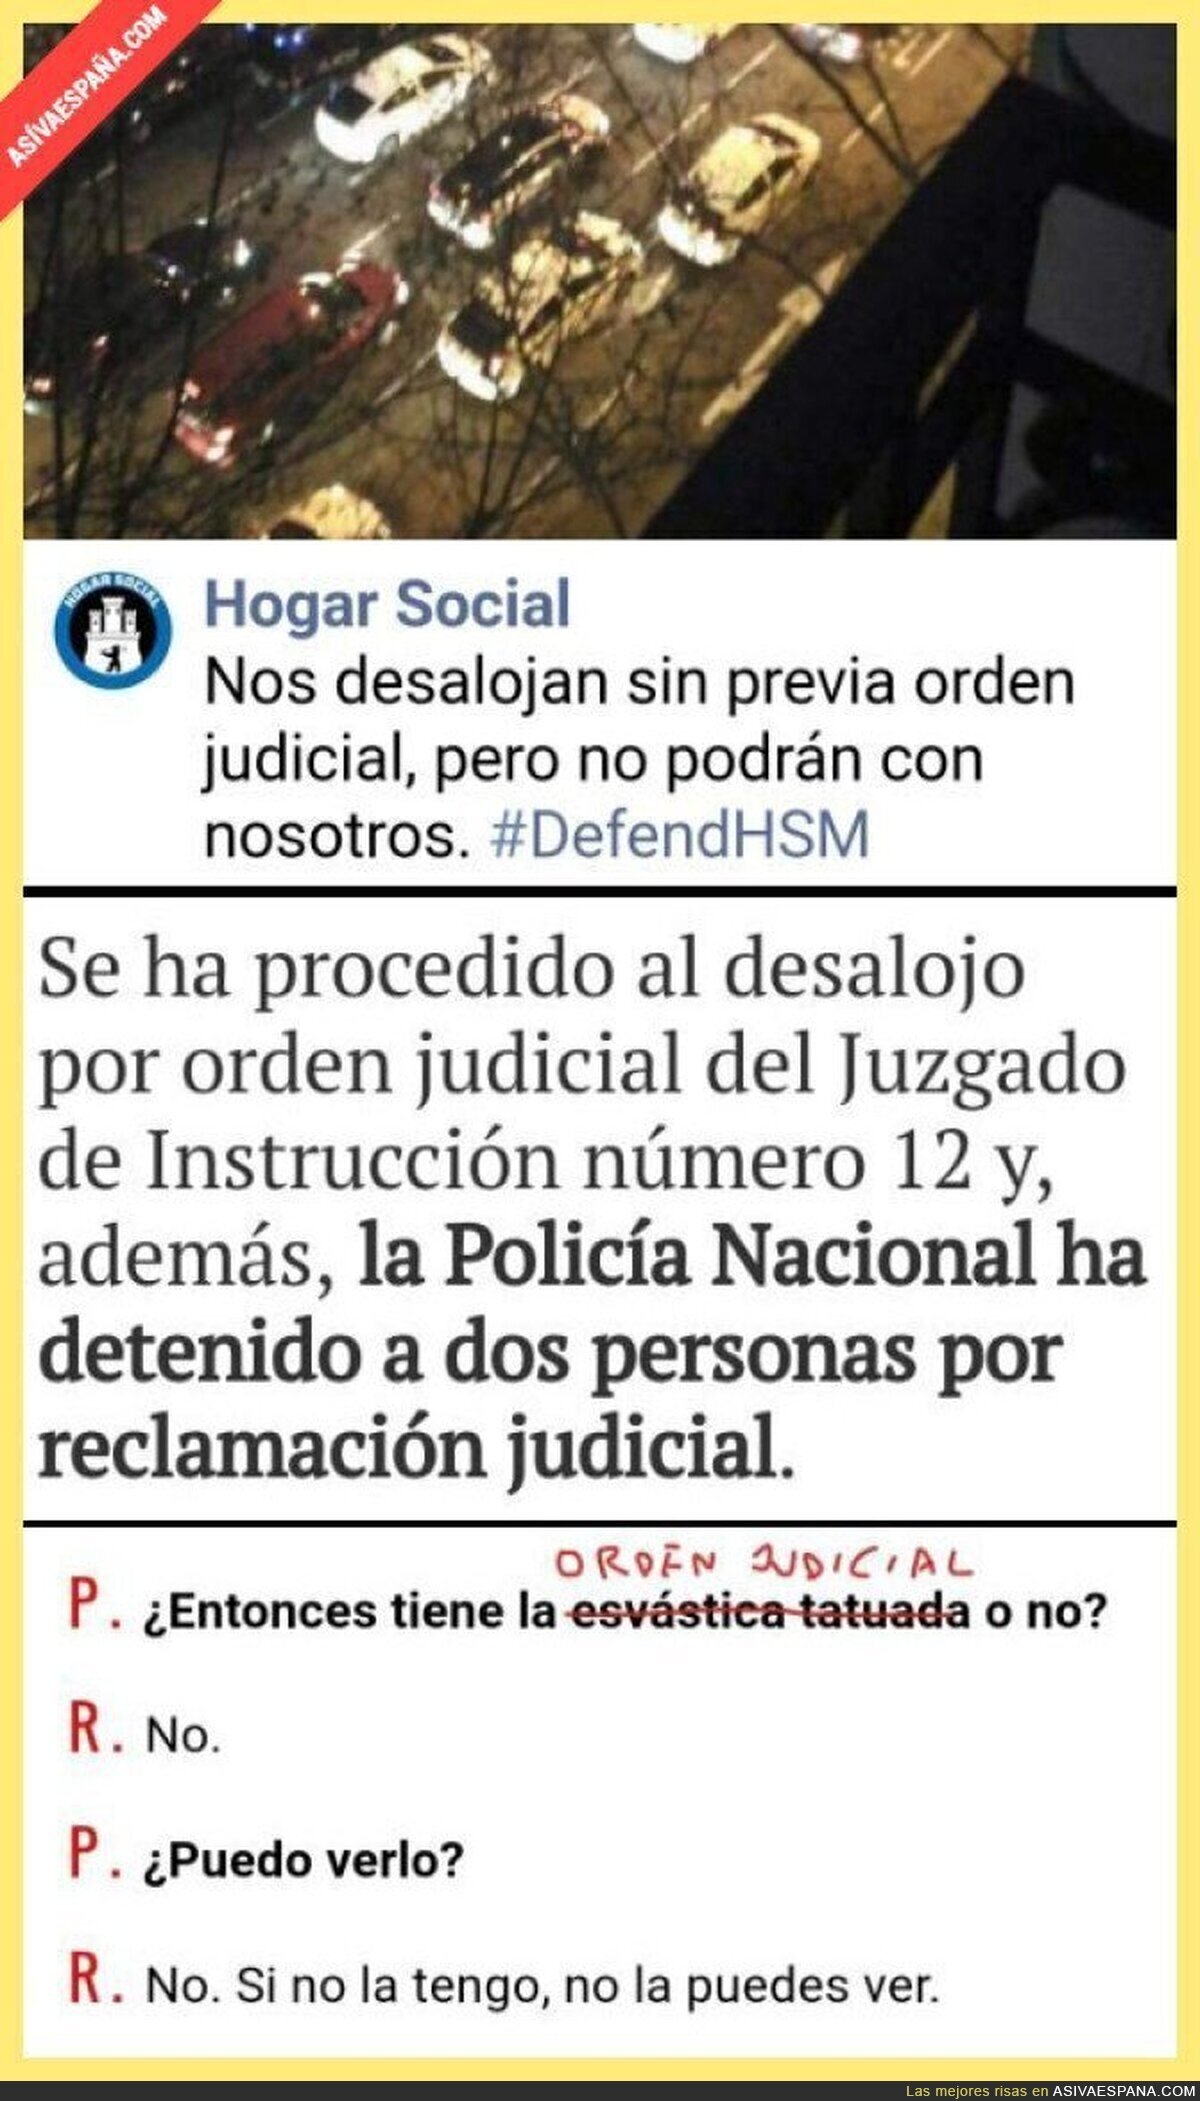 Hogar Social Madrid y la orden judicial